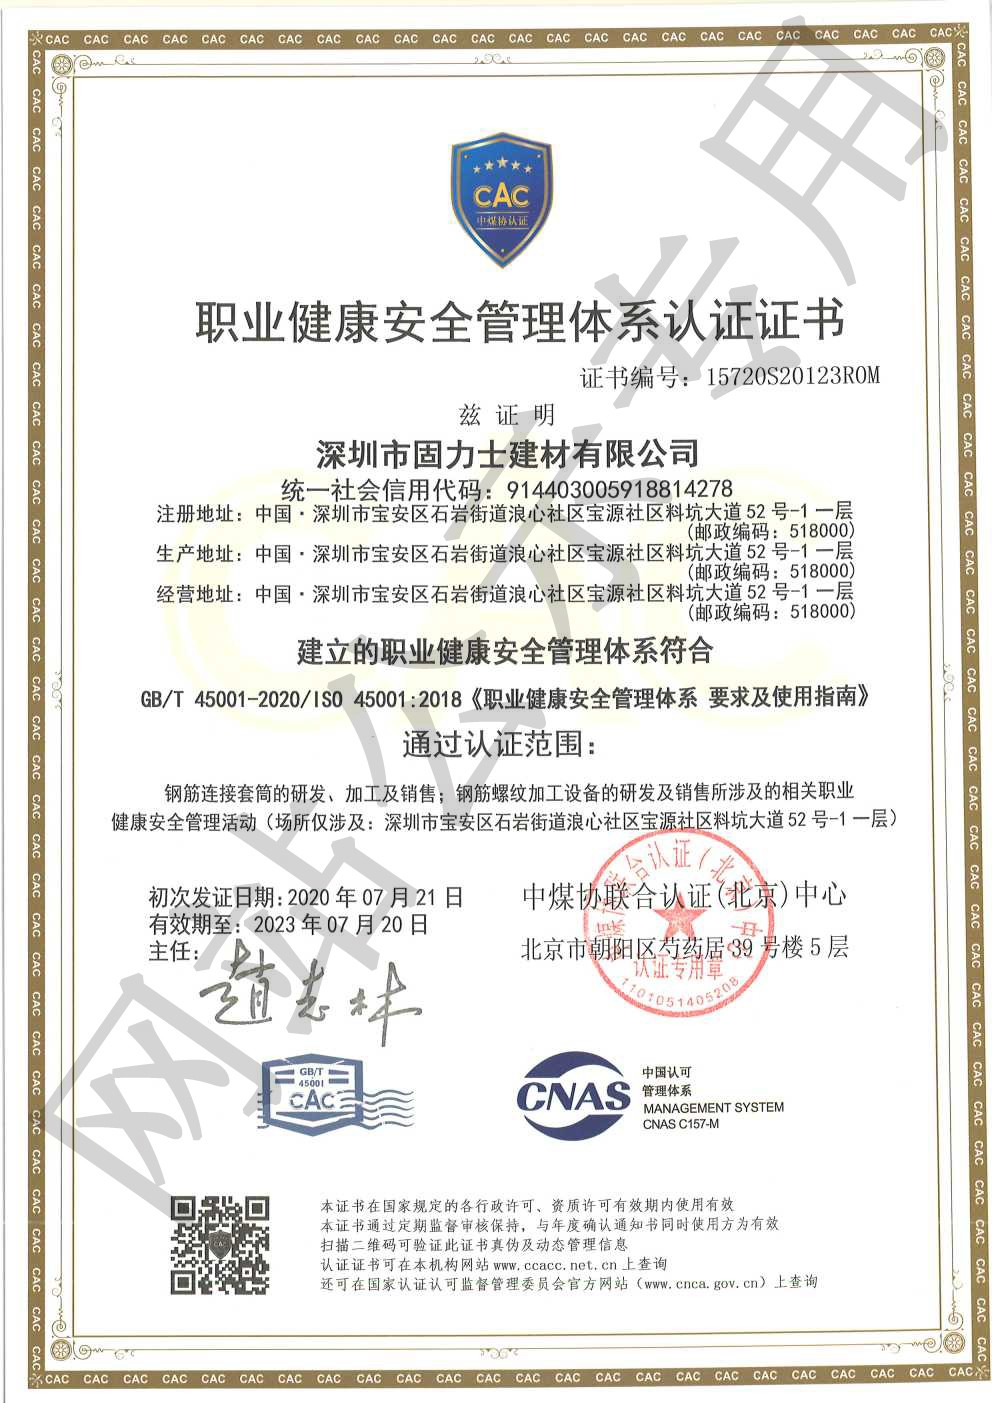 彬村山华侨农场ISO45001证书